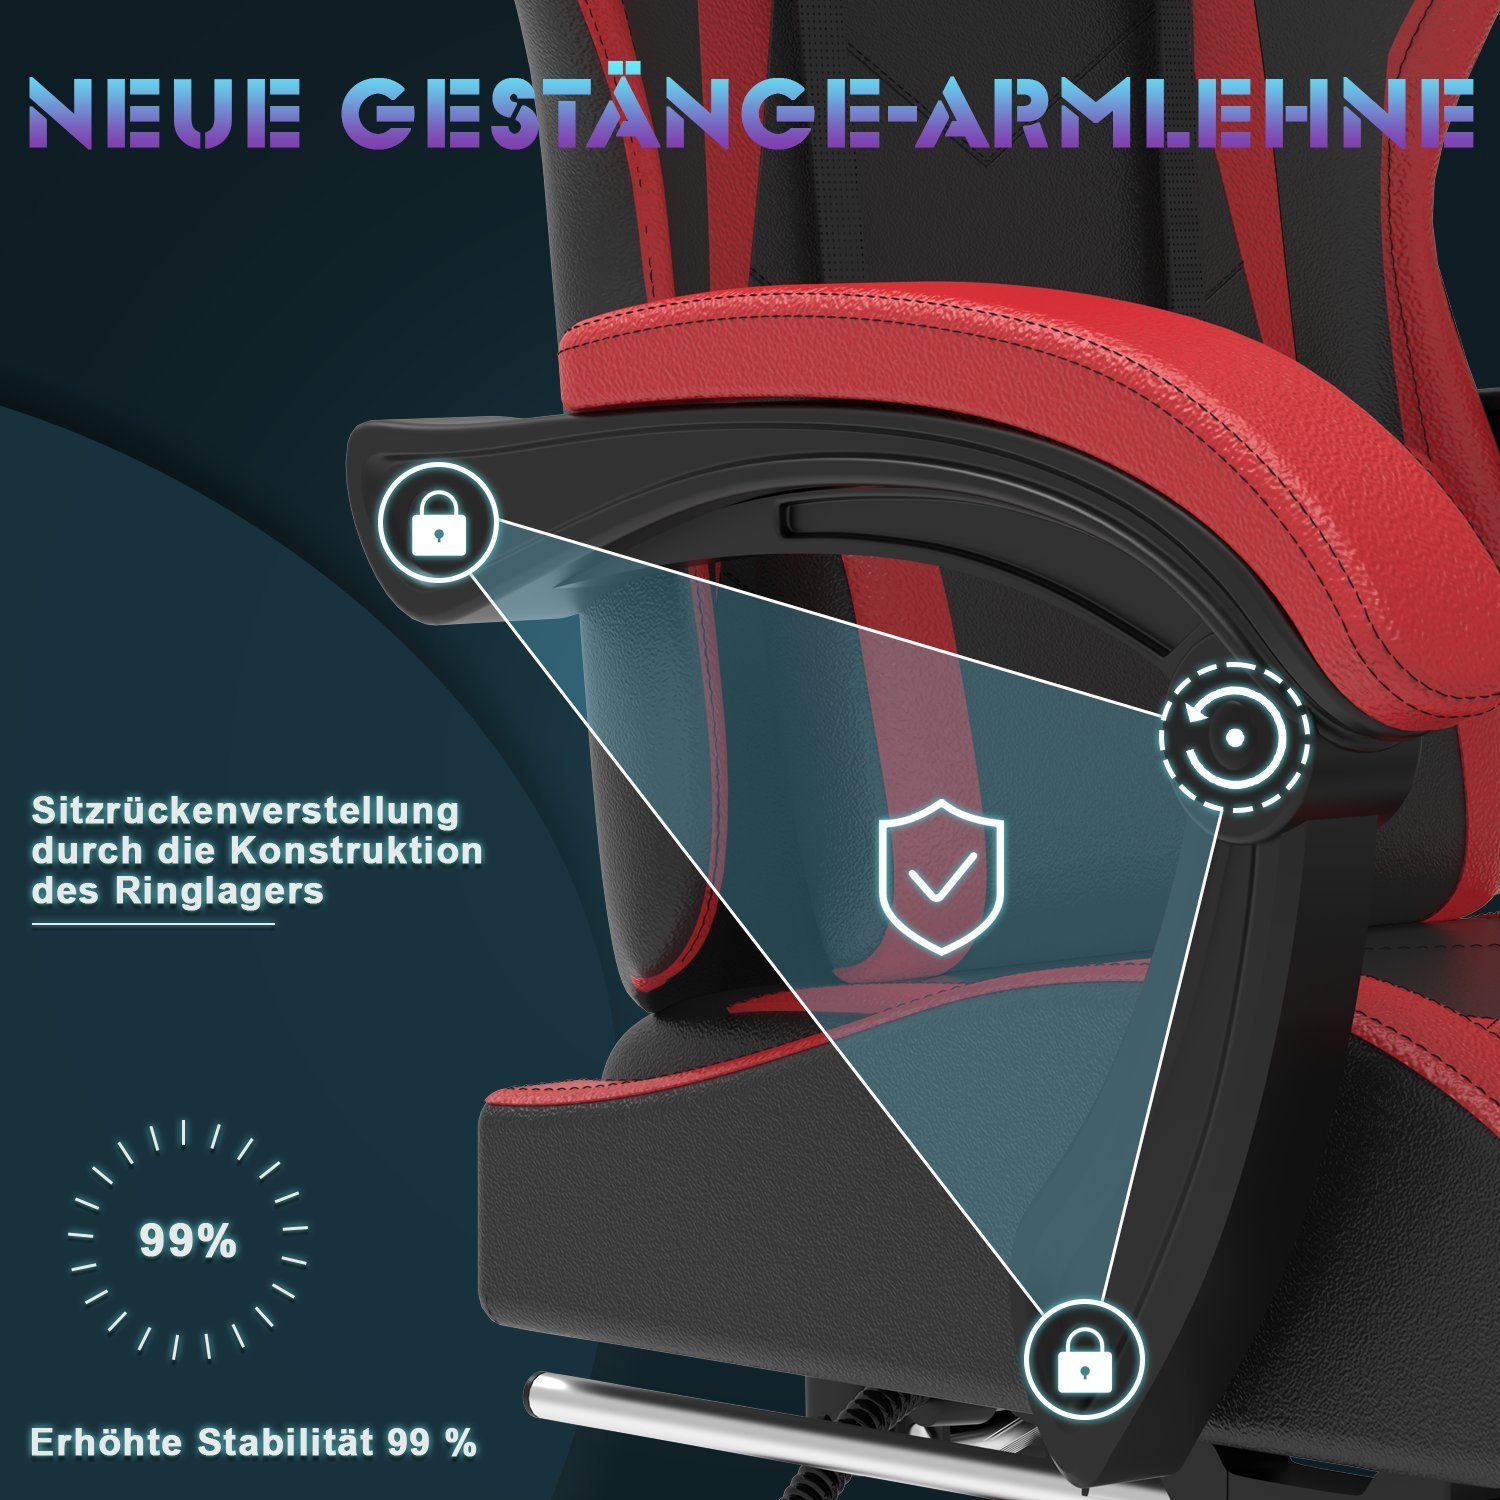 einstellbar Rot Gaming 90-135° Fußstütze, GUNJI Rückenlehne Massage Chair Gaming mit Stuhl